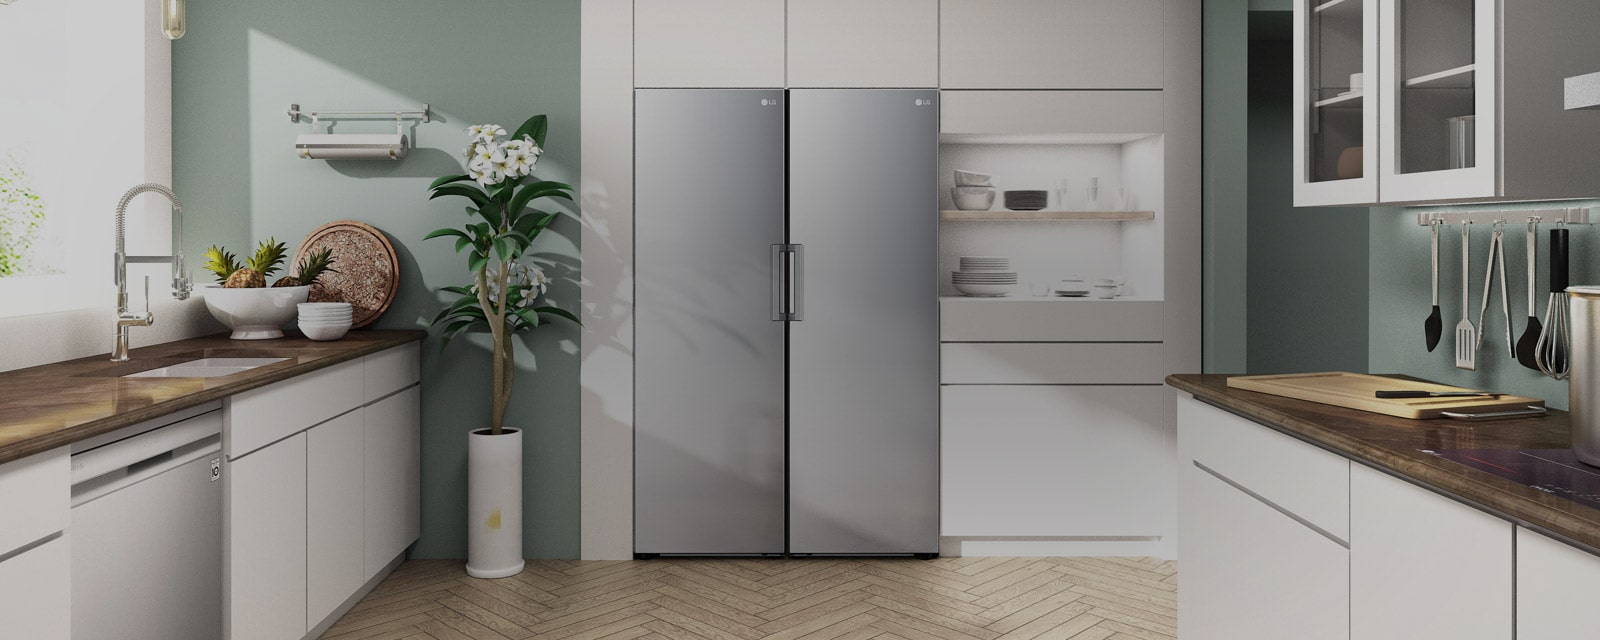 Se muestran la vista frontal del refrigerador y del congelador adaptándose a la perfección en una cocina moderna.